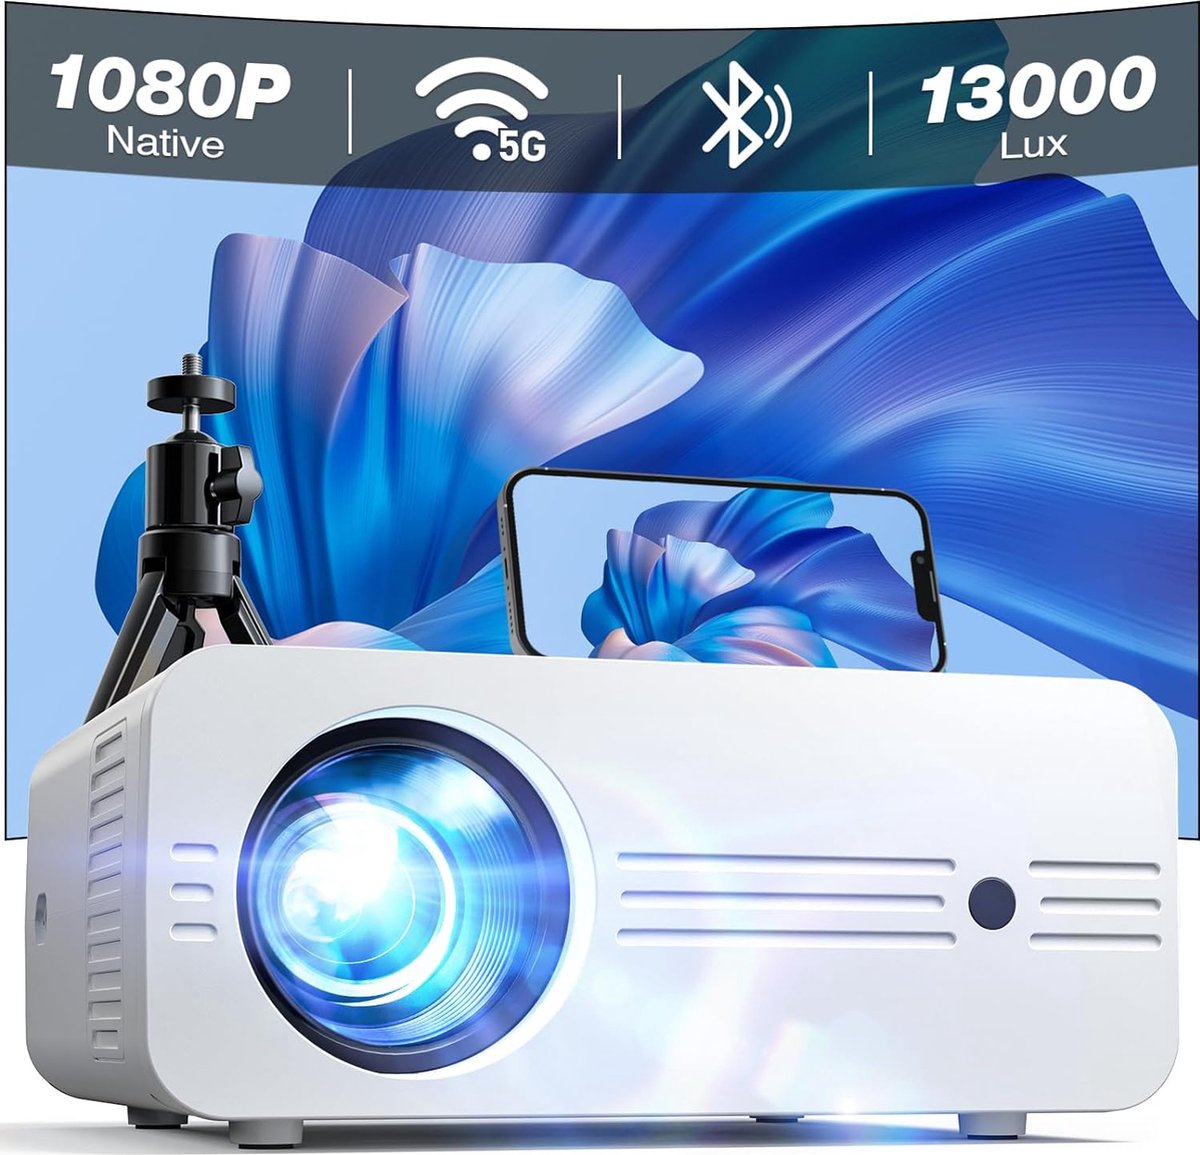 DiverseGoods Projector [Upgrade] Beamer 5G WiFi Bluetooth 13000 Lux Native 1080P 4K Ondersteund, Mini projector 300” thuisbioscoop Geschikt Voor iOS Android HDMI TV Stick PS5 (Tas en Statief Inbegrepen)